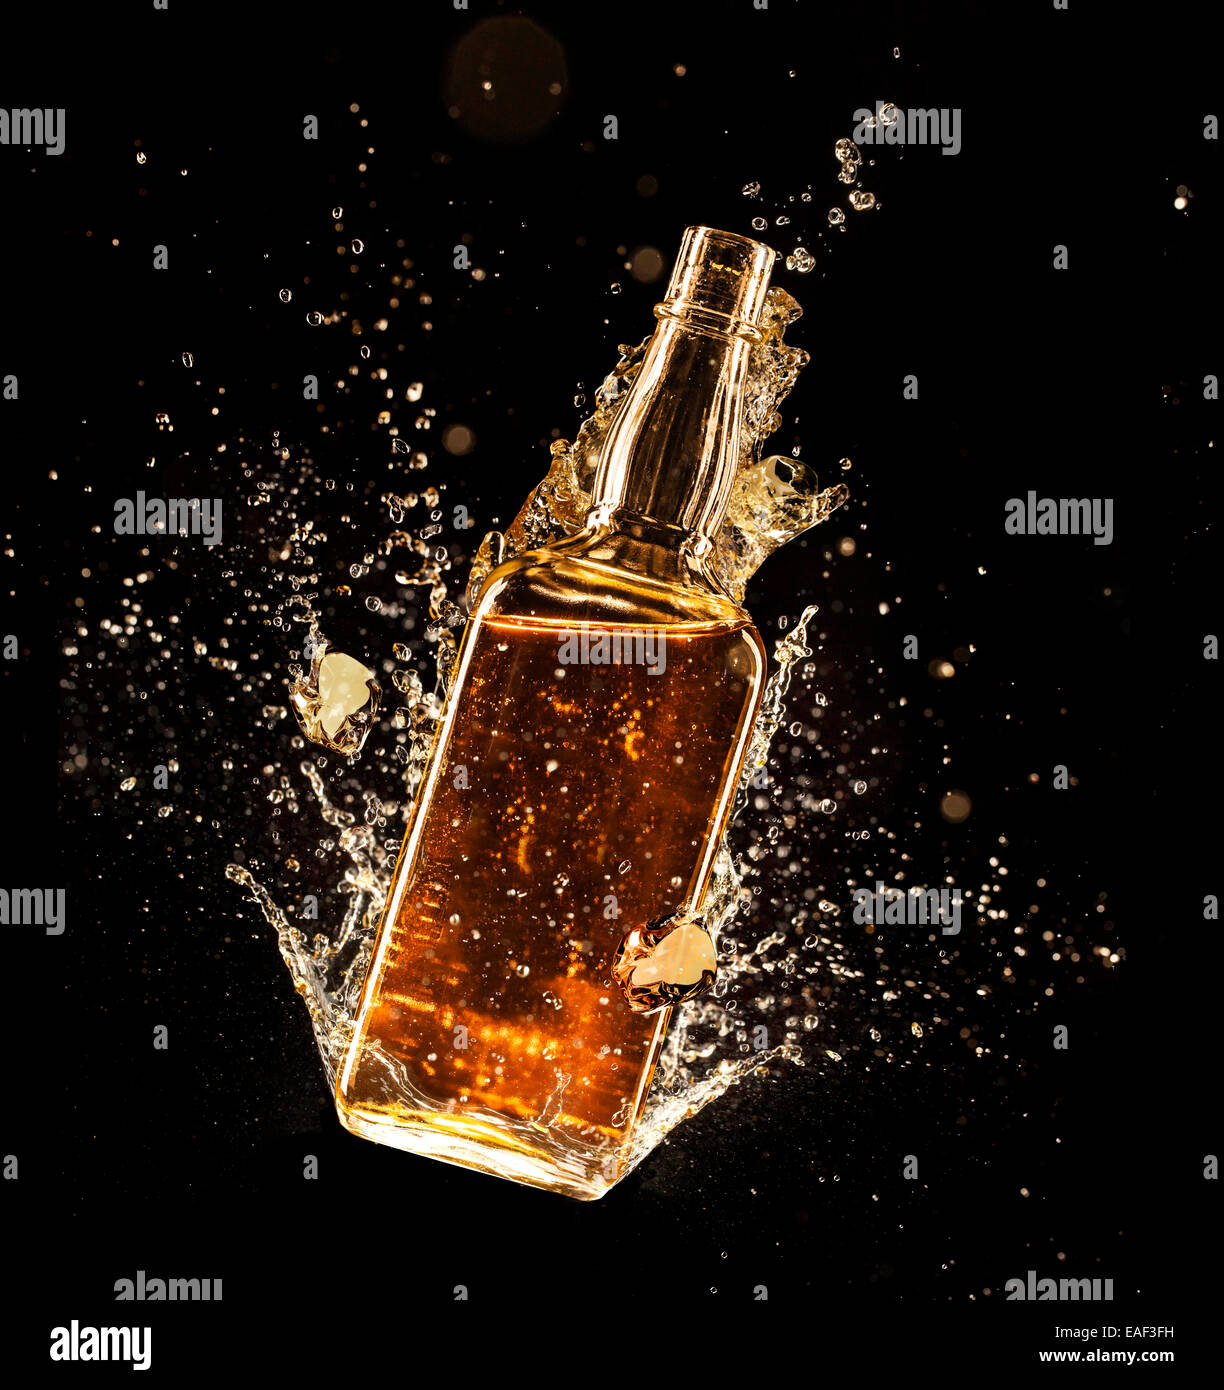 Concept of liquor splashing around bottle, isolated on black background Stock Photo